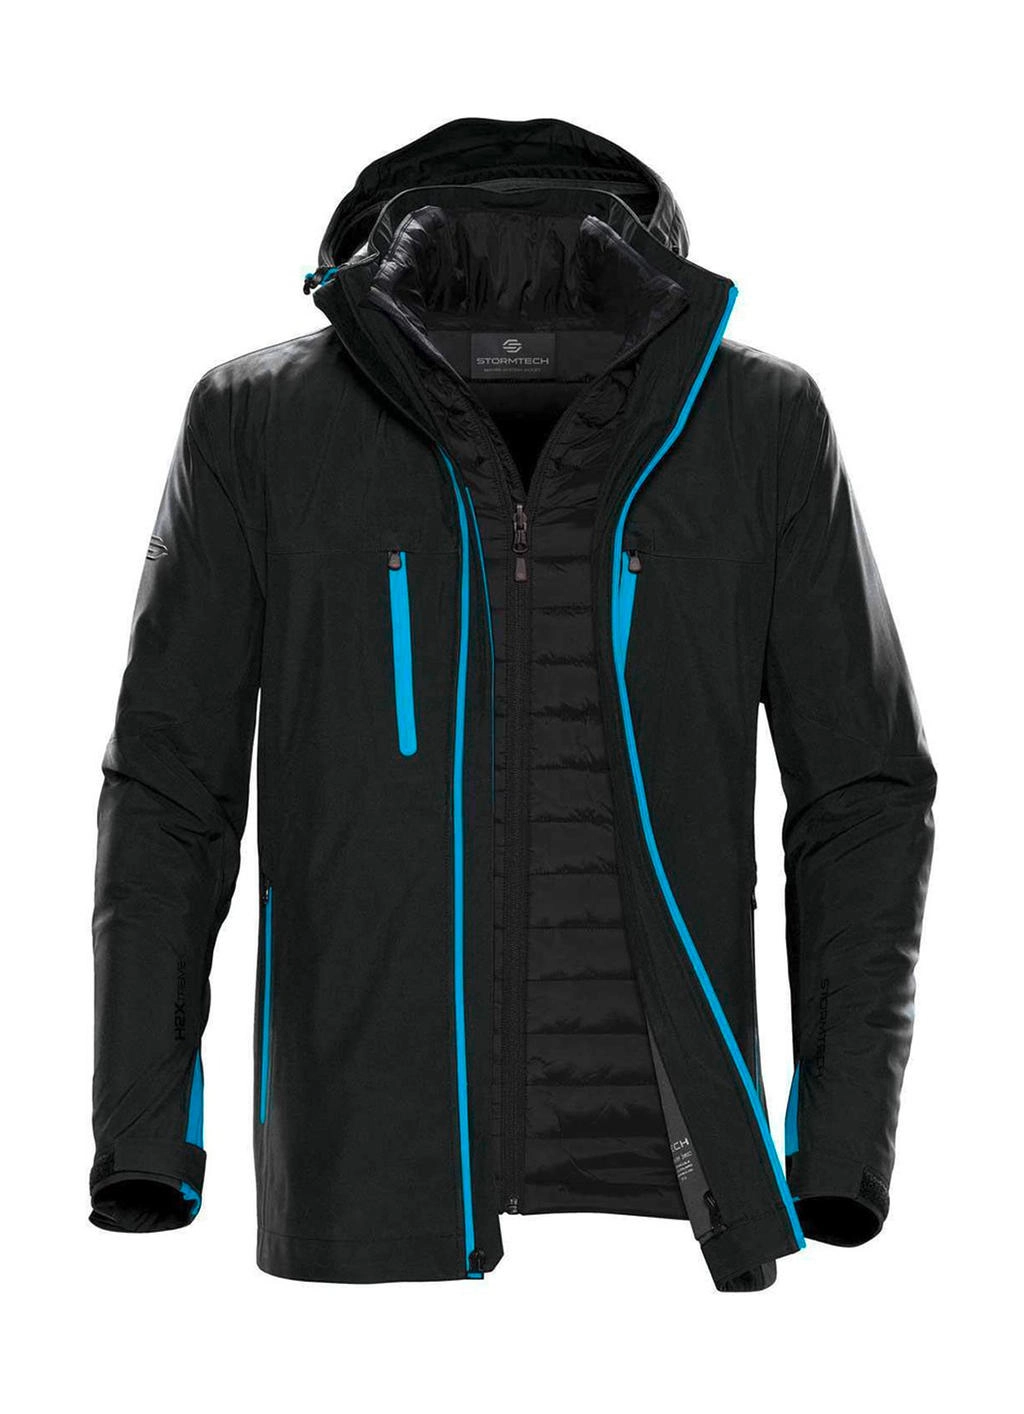 Men`s Matrix System Jacket zum Besticken und Bedrucken in der Farbe Black/Electric Blue mit Ihren Logo, Schriftzug oder Motiv.